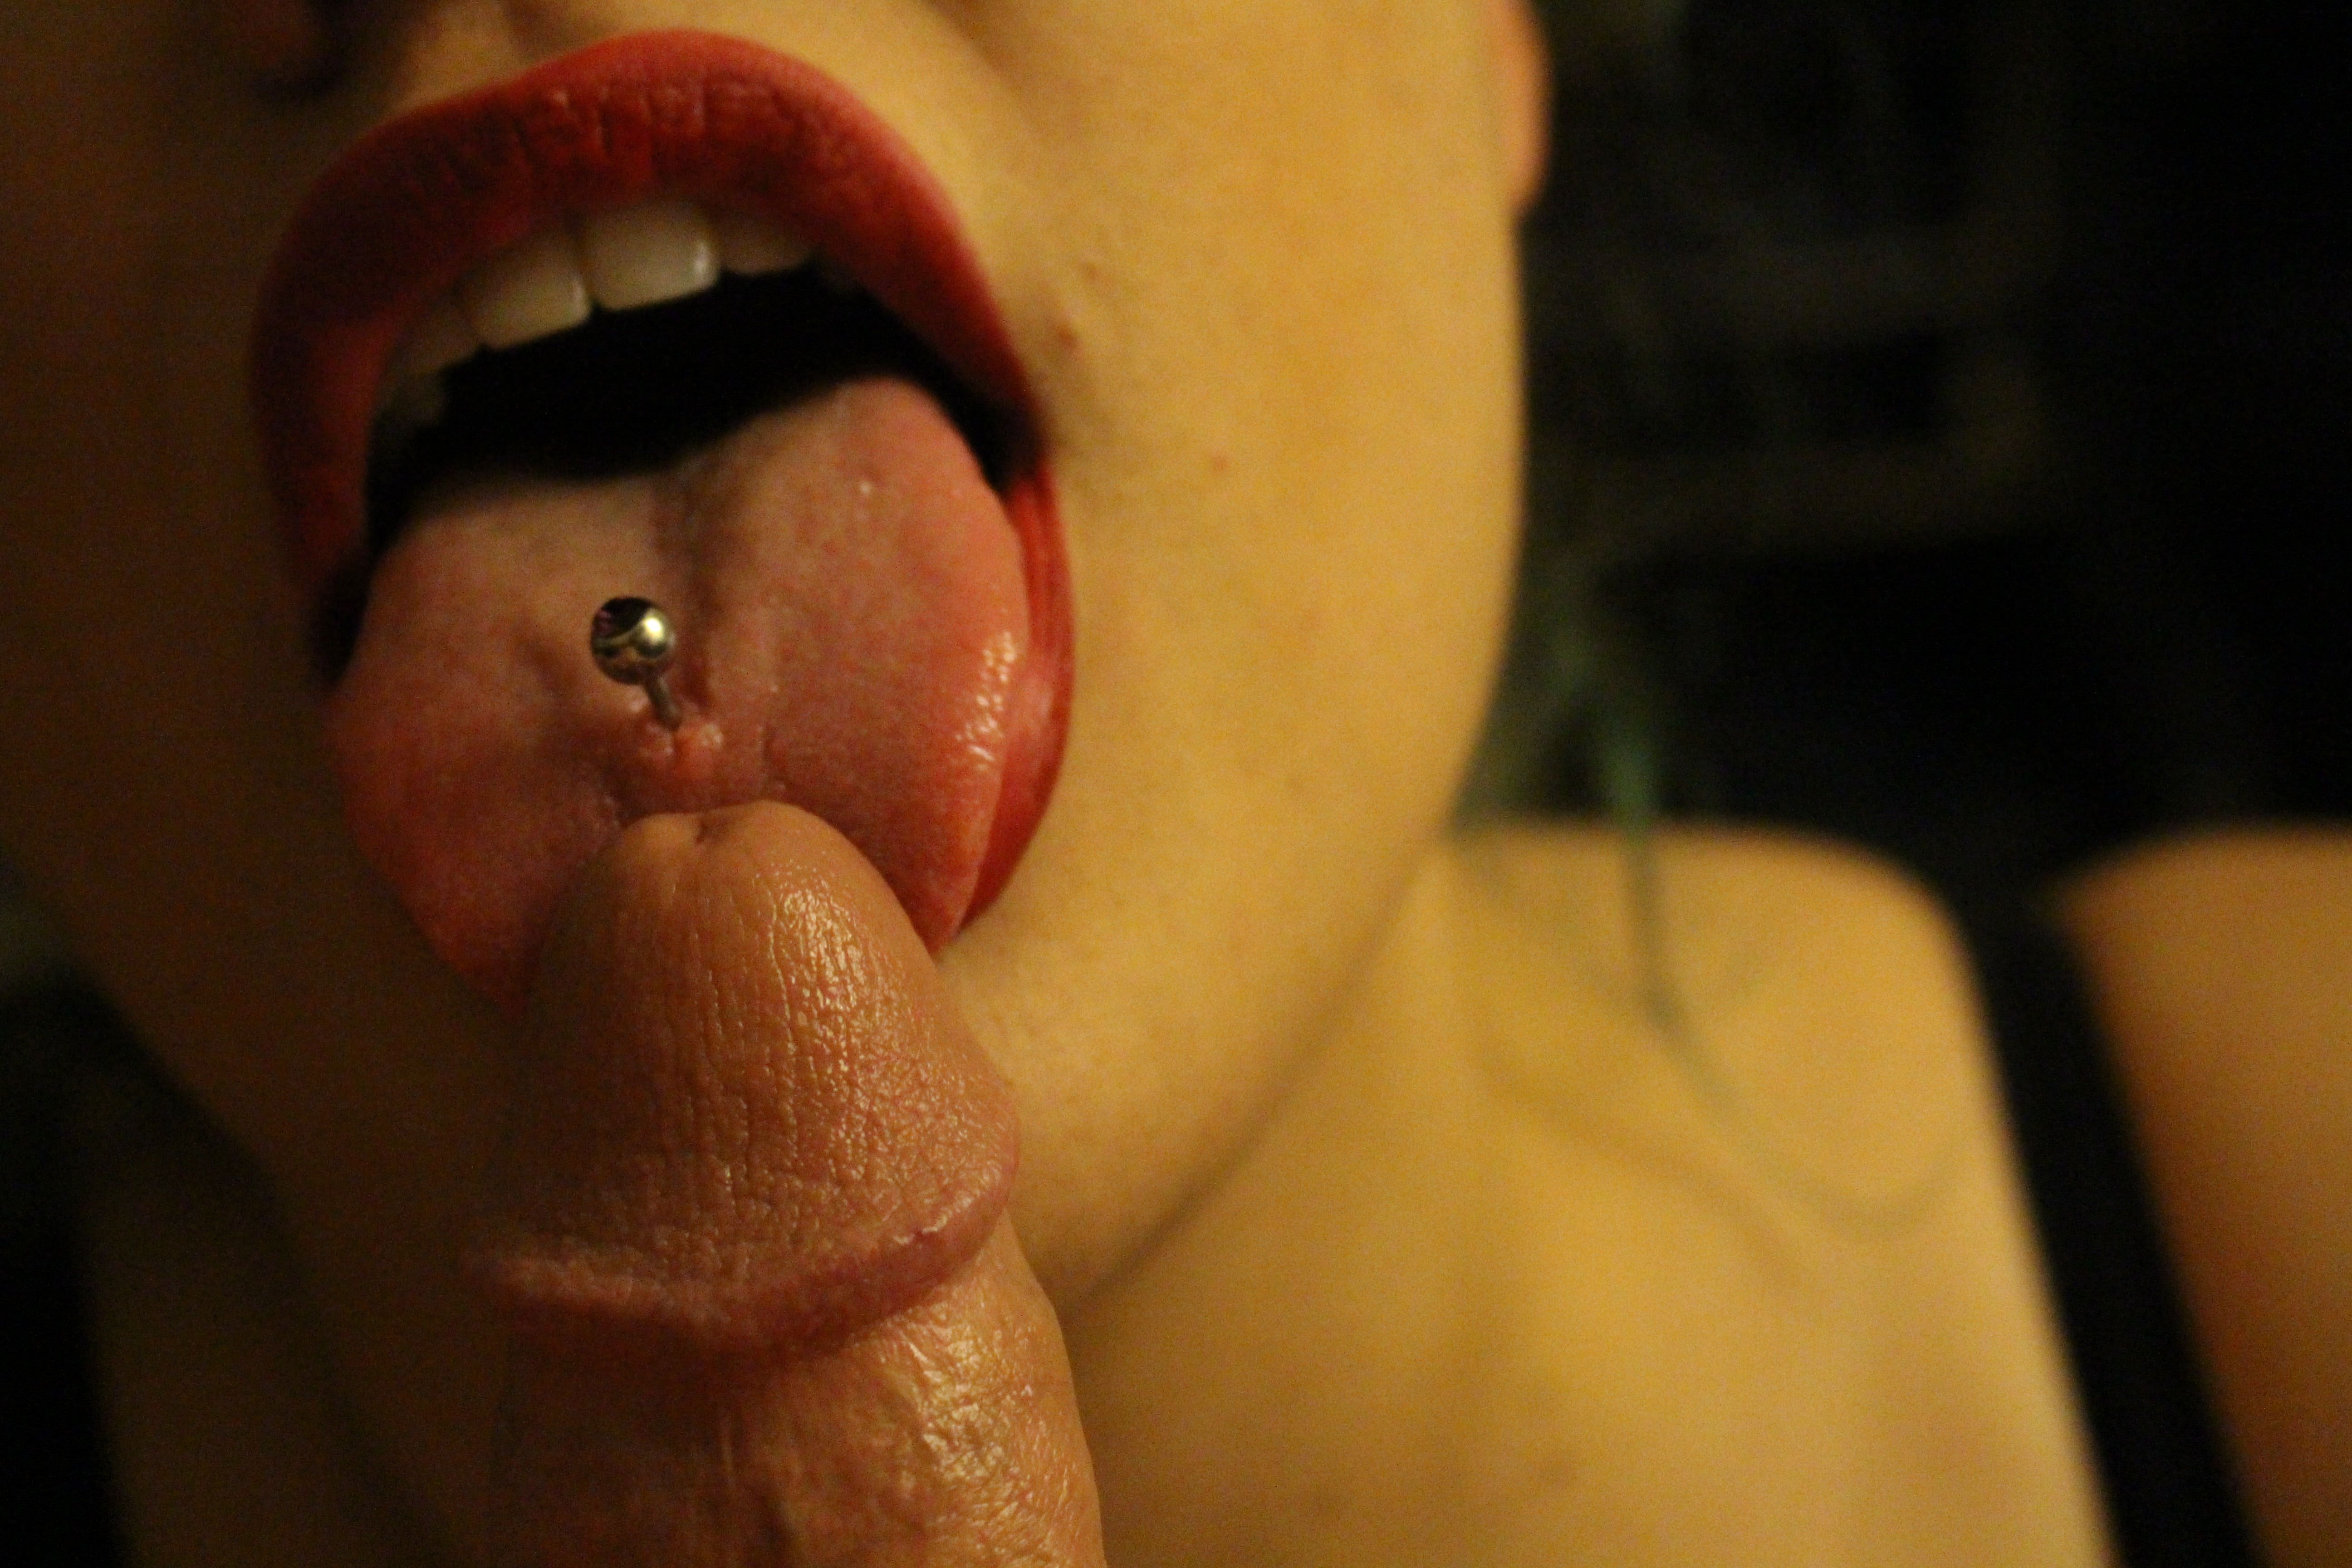 Tongue licking lips